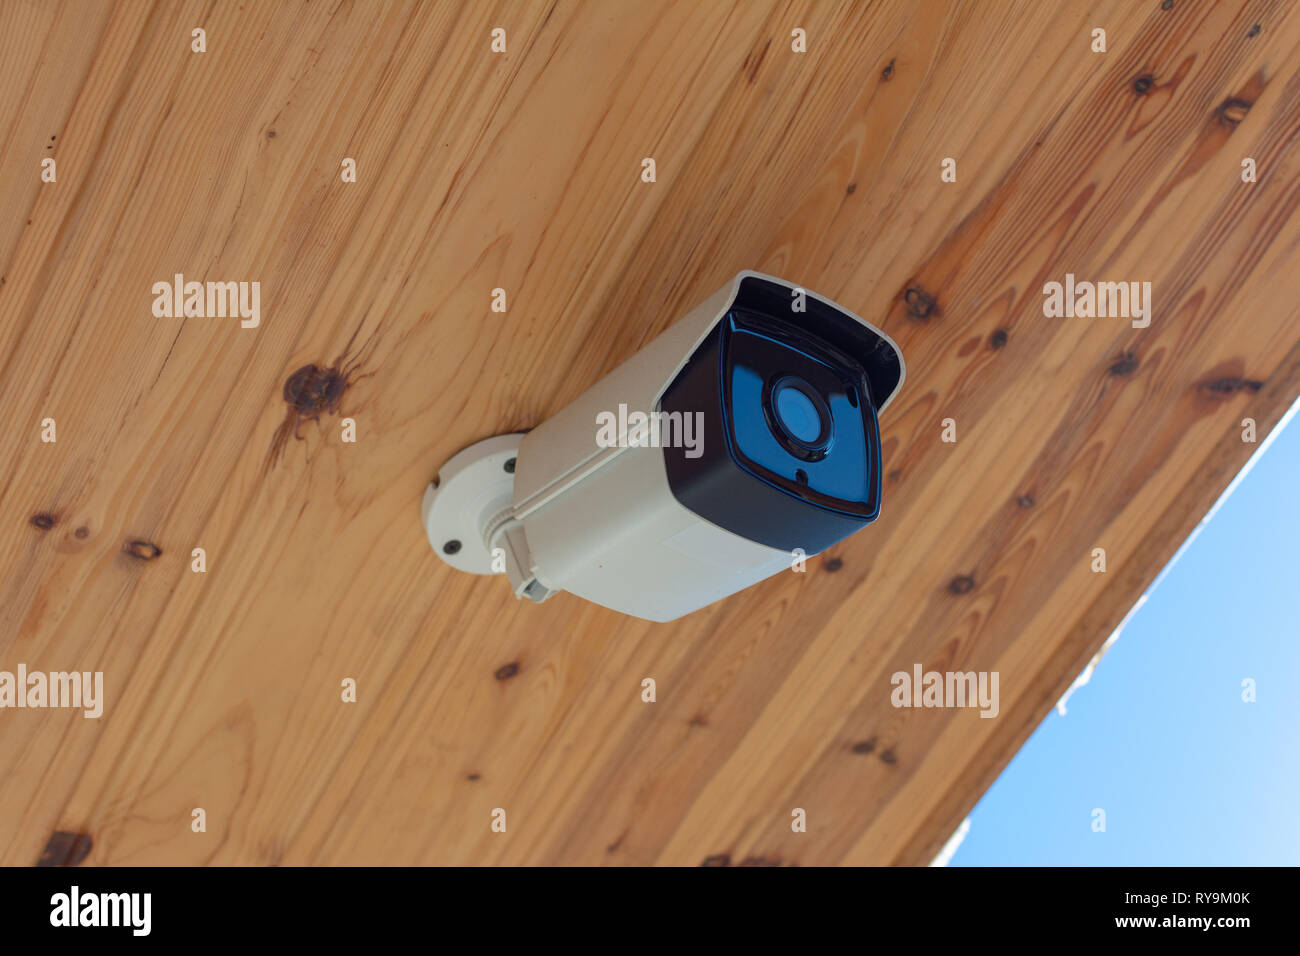 Cámara CCTV exterior moderno en un techo. Concepto de inspección y vigilancia. Cámara de vigilancia del concepto de sistema anti-robo. Foto de stock